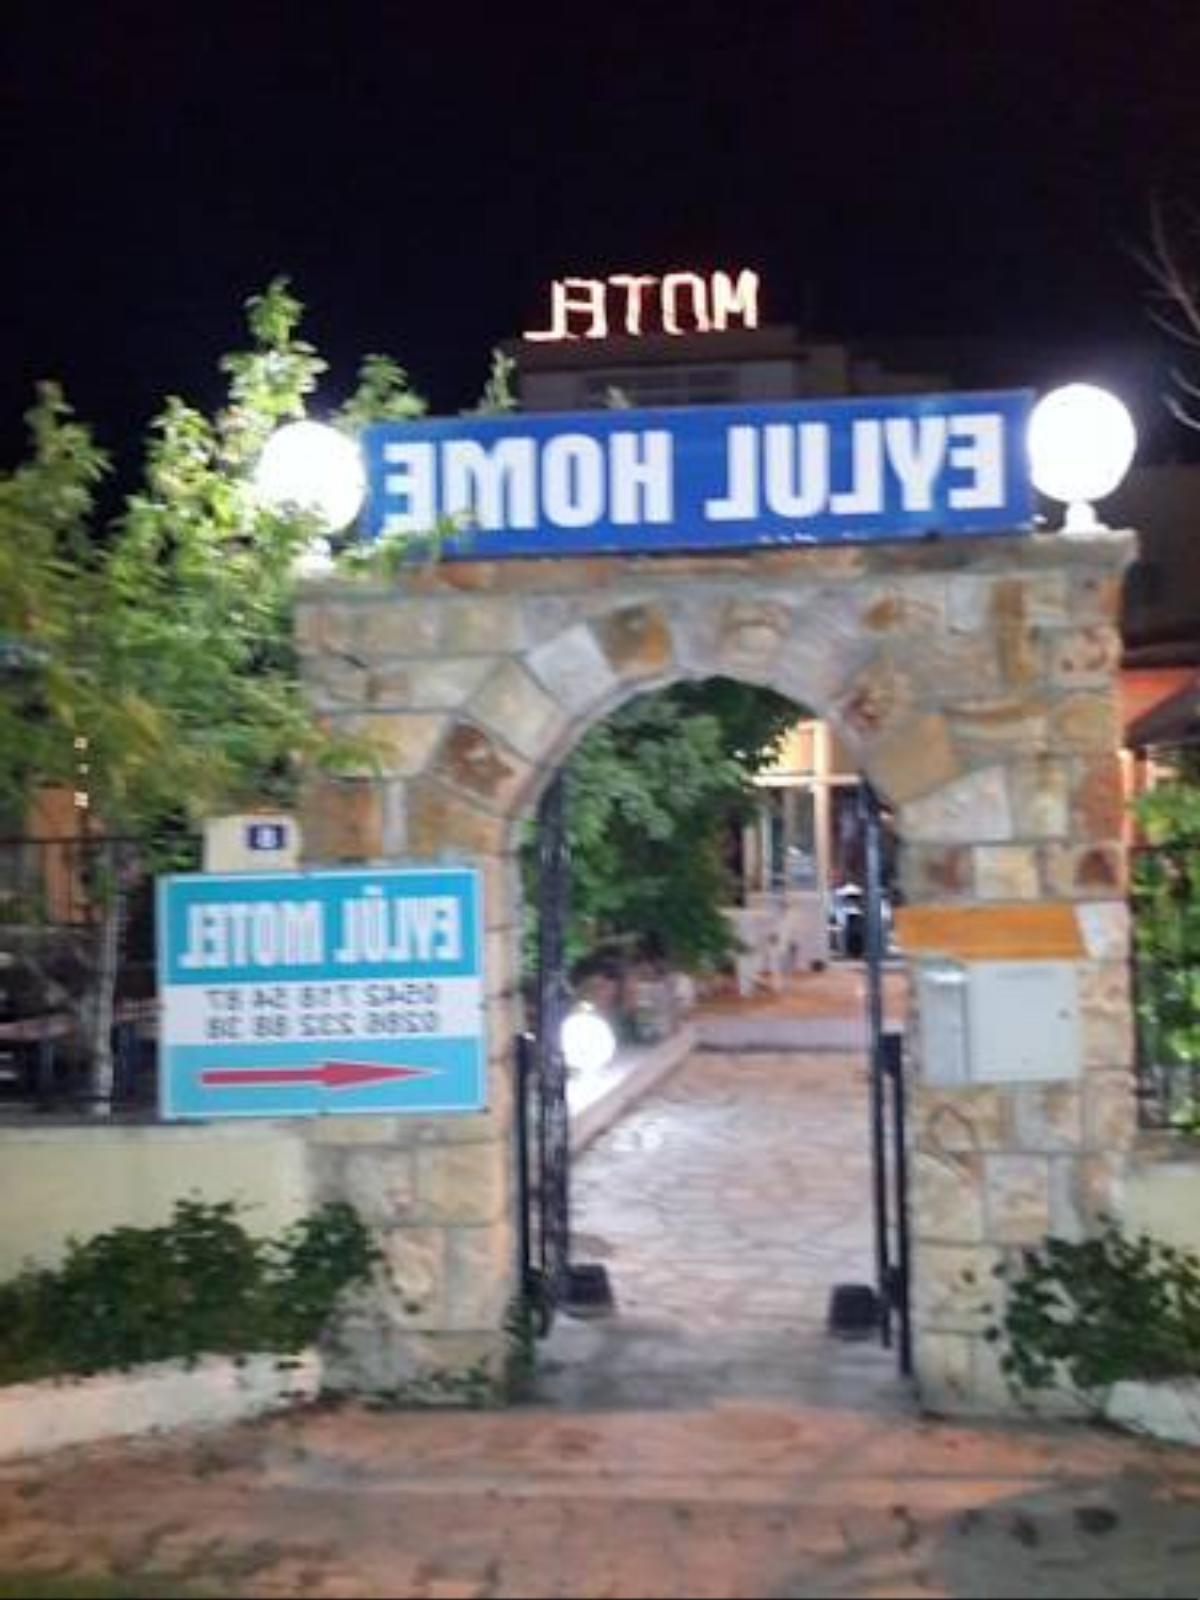 Eylul Motel Hotel Guzelyali Turkey